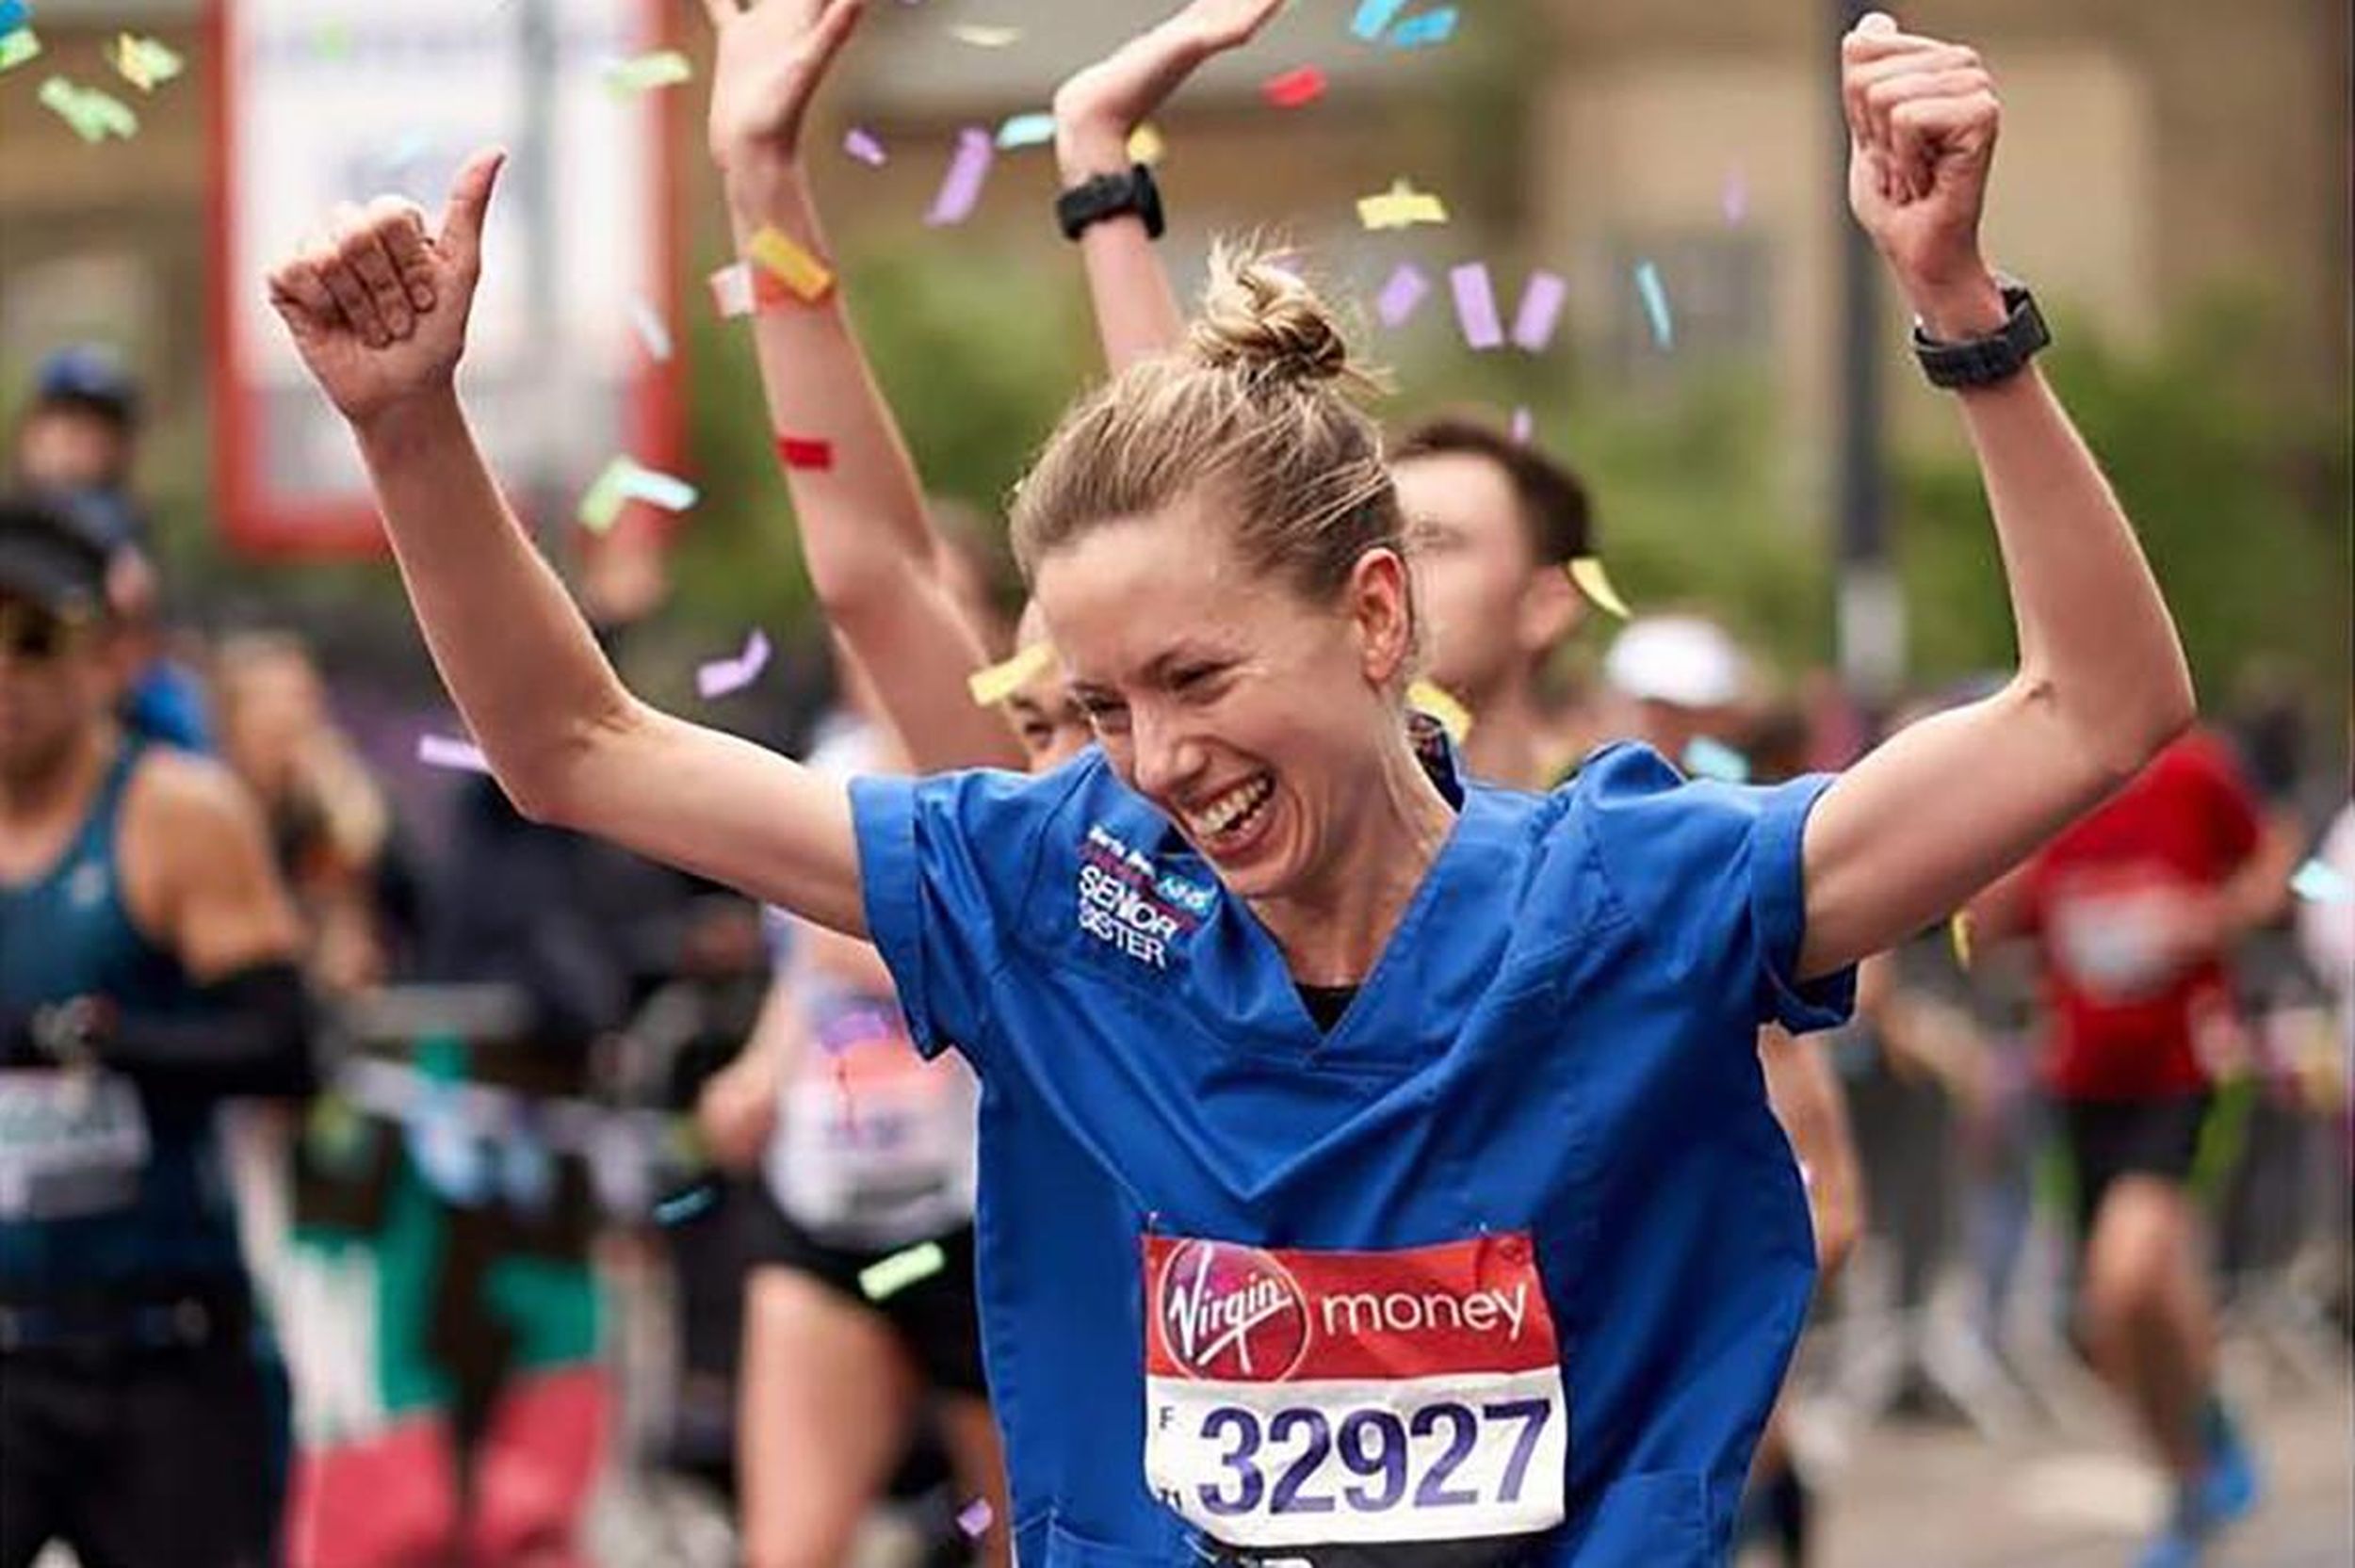 Marathon runner’s garb disqualifies her for ‘fastest nurse’ The